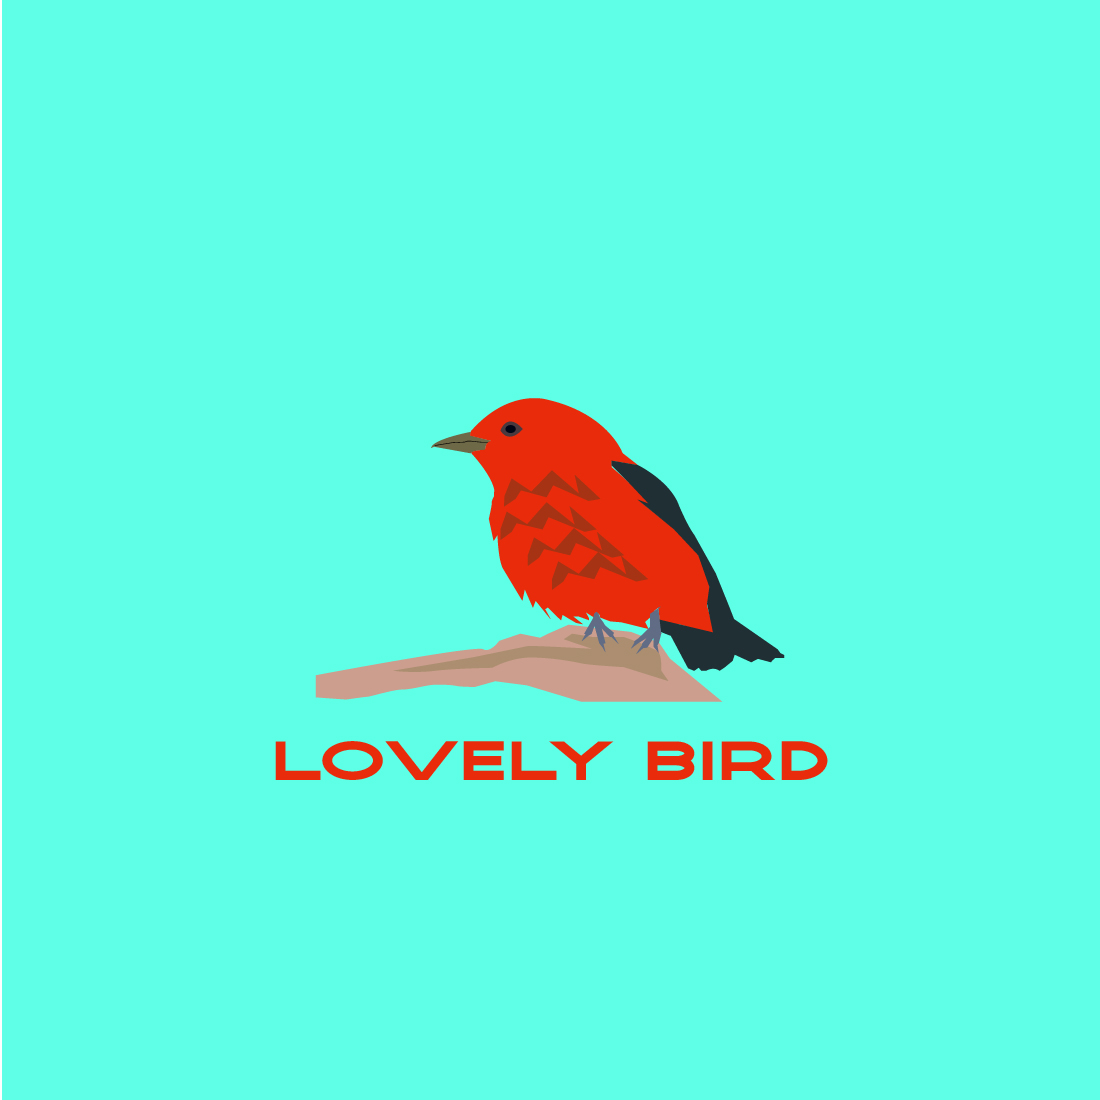 lovely bird cover image.